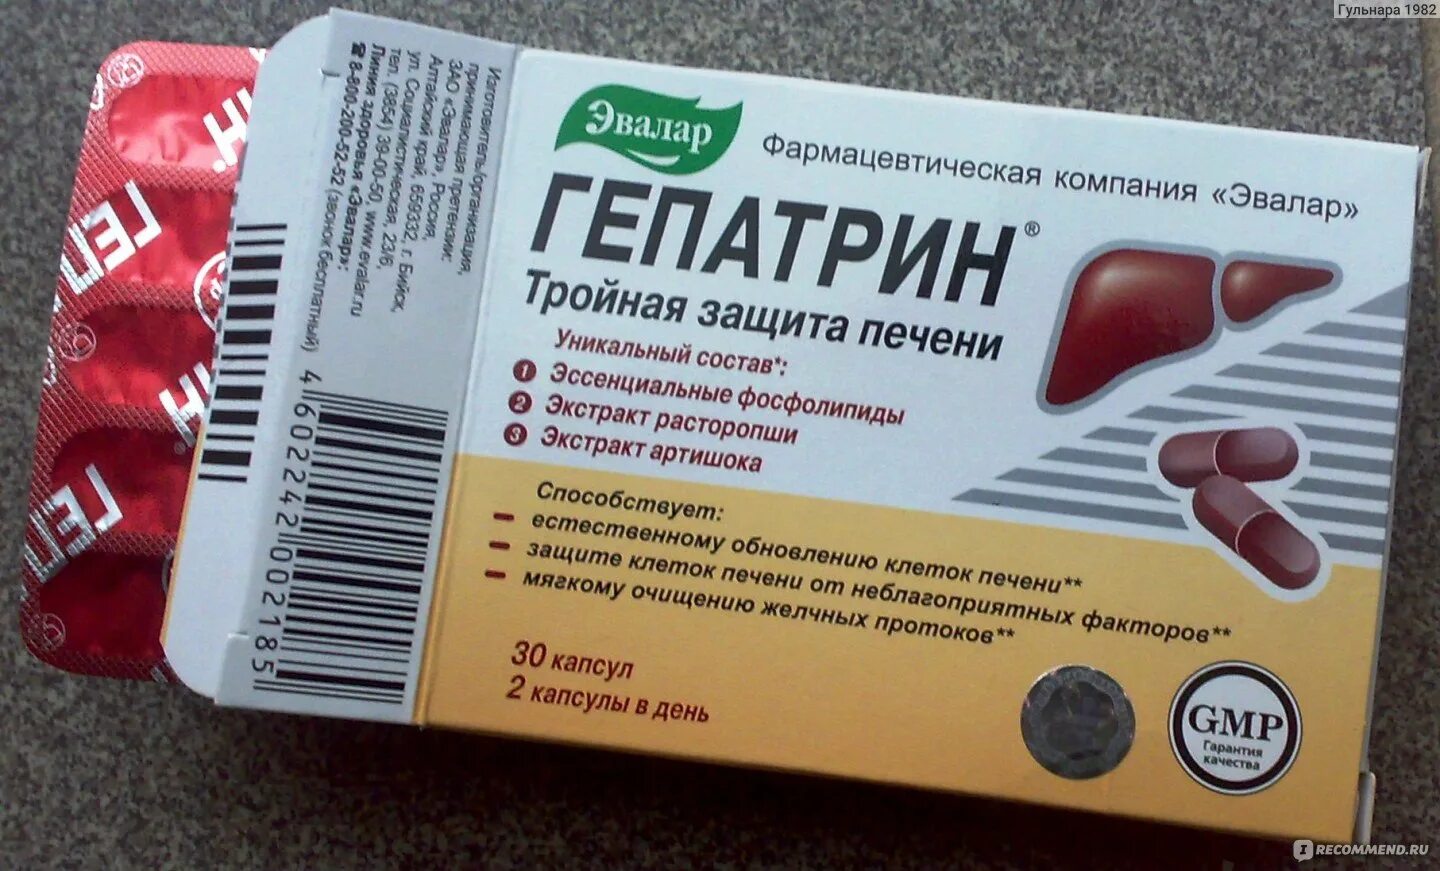 Таблетки для печени гепатрин. Гепатрин био Эвалар. Эвалар для печени Гепатрин. Эвалар, Гепатрин, капсулы, \"тройная защита печени\", 60 шт. Гепатрин (БАД) капс n60.